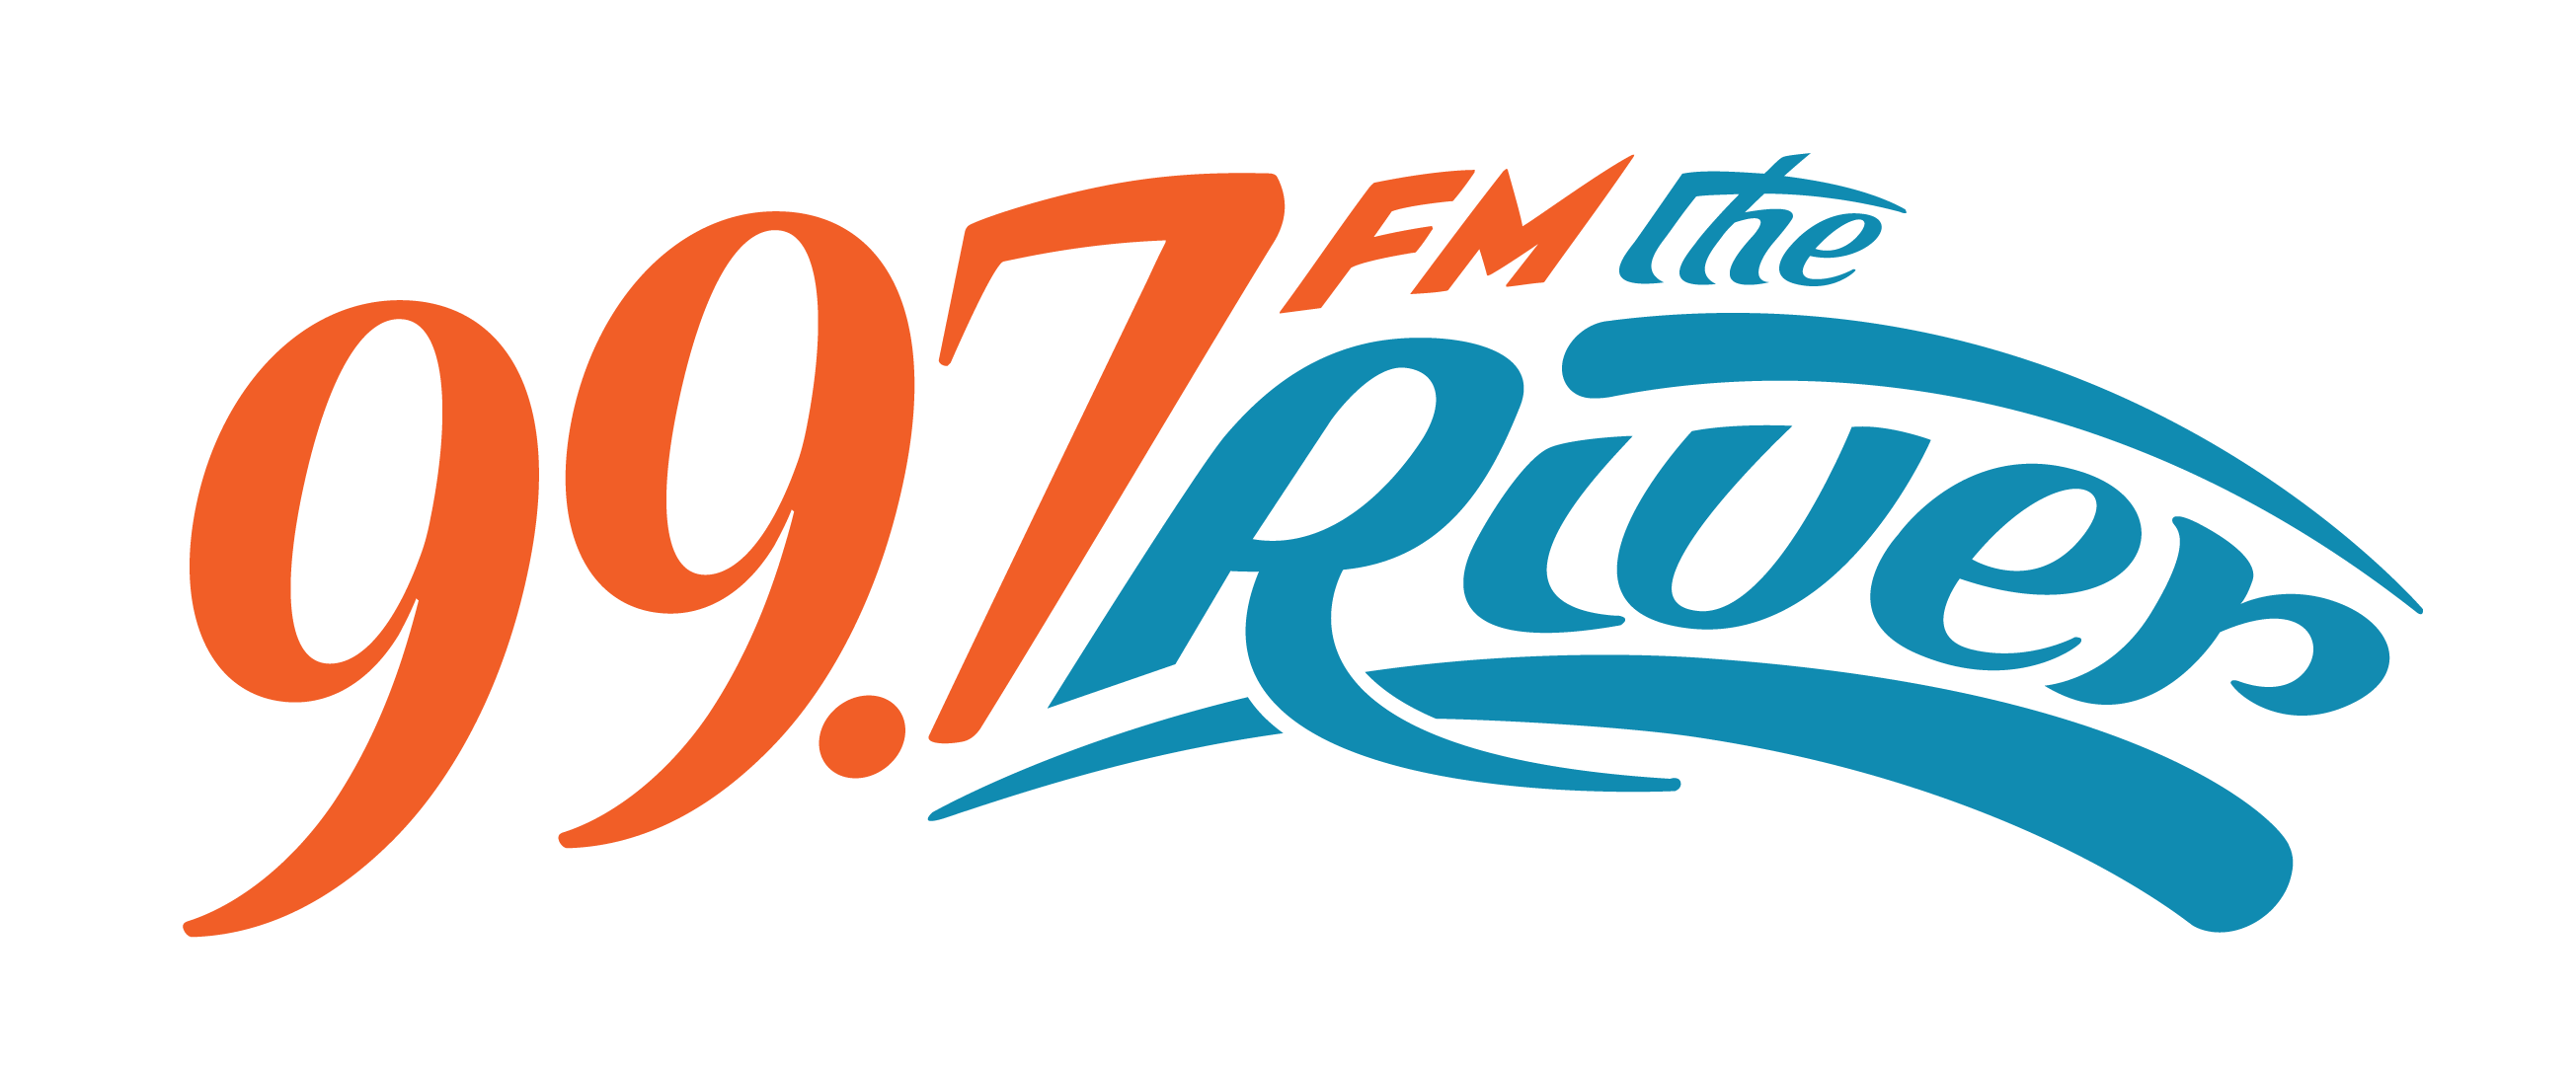 99.7 The River FM